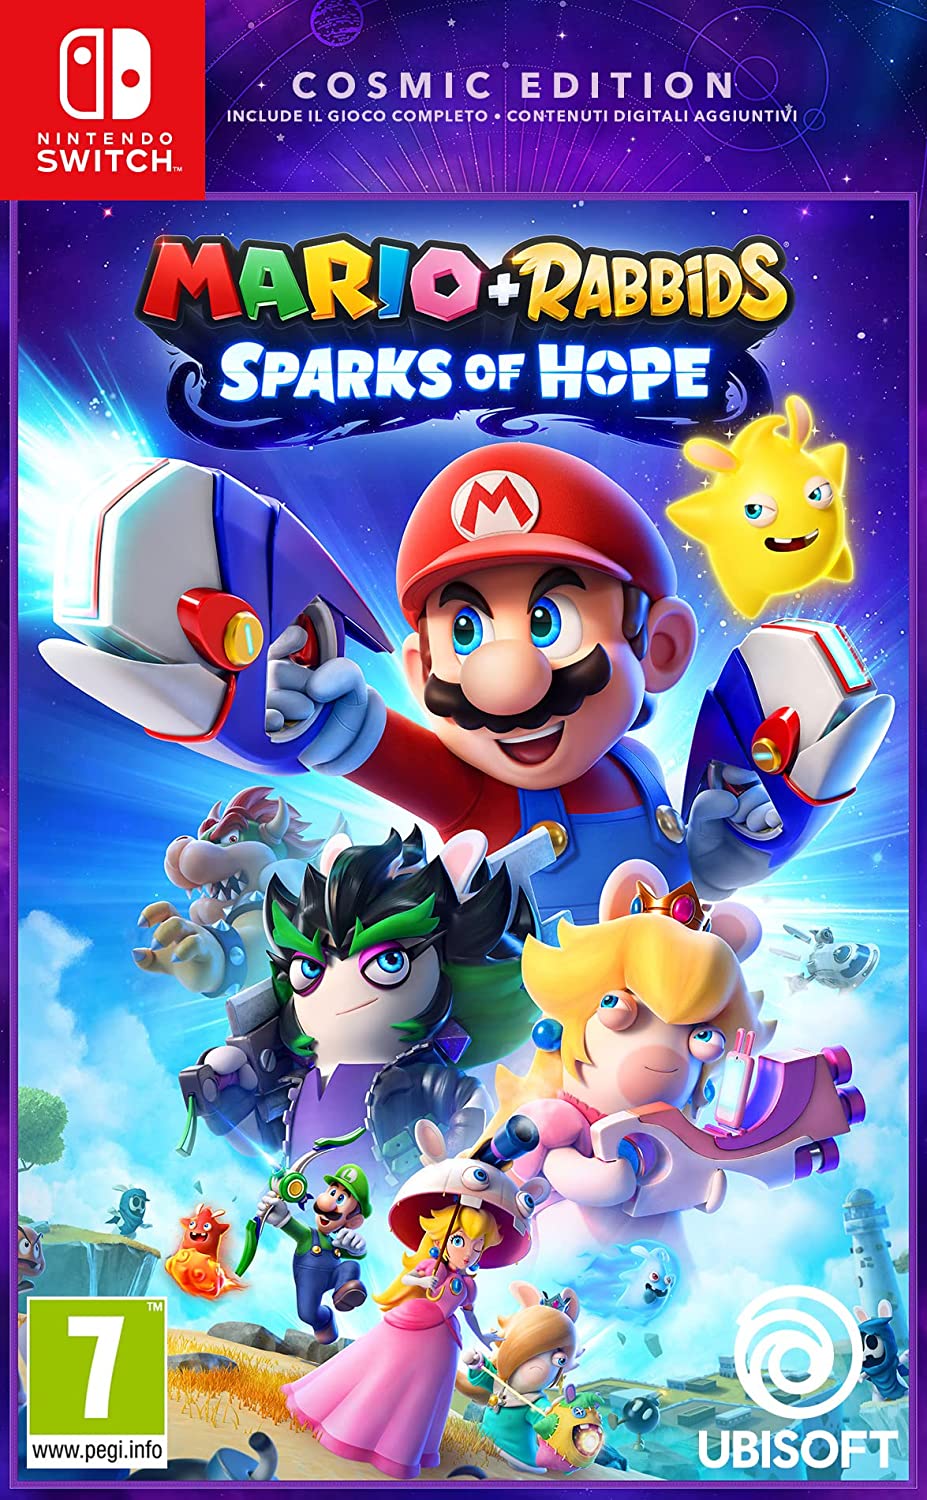 Videogioco Mario+Rabbids Sparks of Hope per Nintendo Switch in offerta: da Esselunga al prezzo di 49 euro